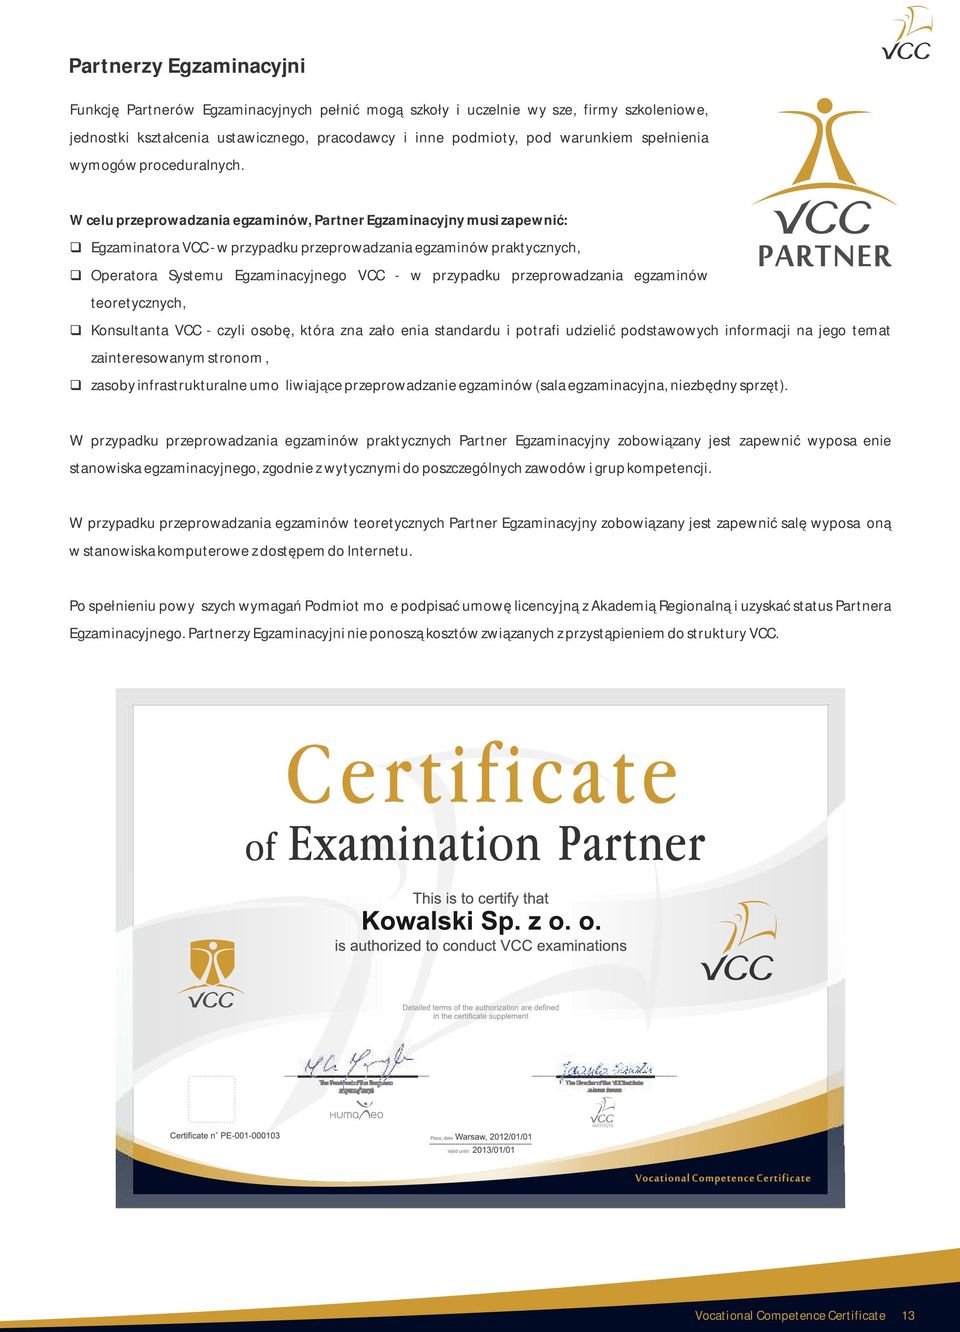 W celu przeprowadzania egzaminów, Partner Egzaminacyjny musi zapewnić: Egzaminatora VCC - w przypadku przeprowadzania egzaminów praktycznych, Operatora Systemu Egzaminacyjnego VCC - w przypadku